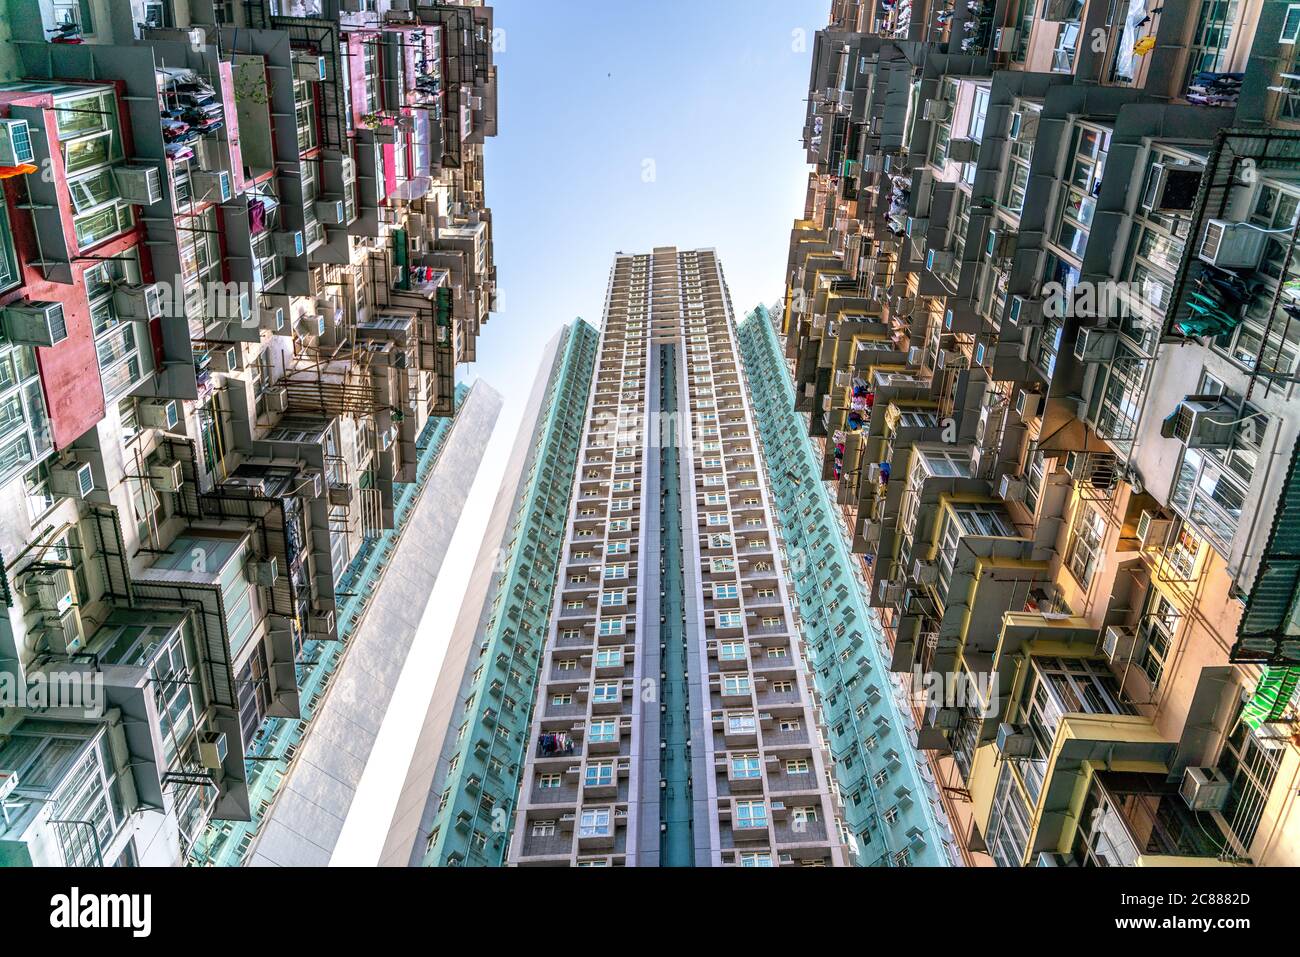 Der beliebte Ort unter Touristen genannt Montane Mansion in der Nähe von Tai Koo in Hongkong. Überfülltes altes Retro-Gebäude Stockfoto